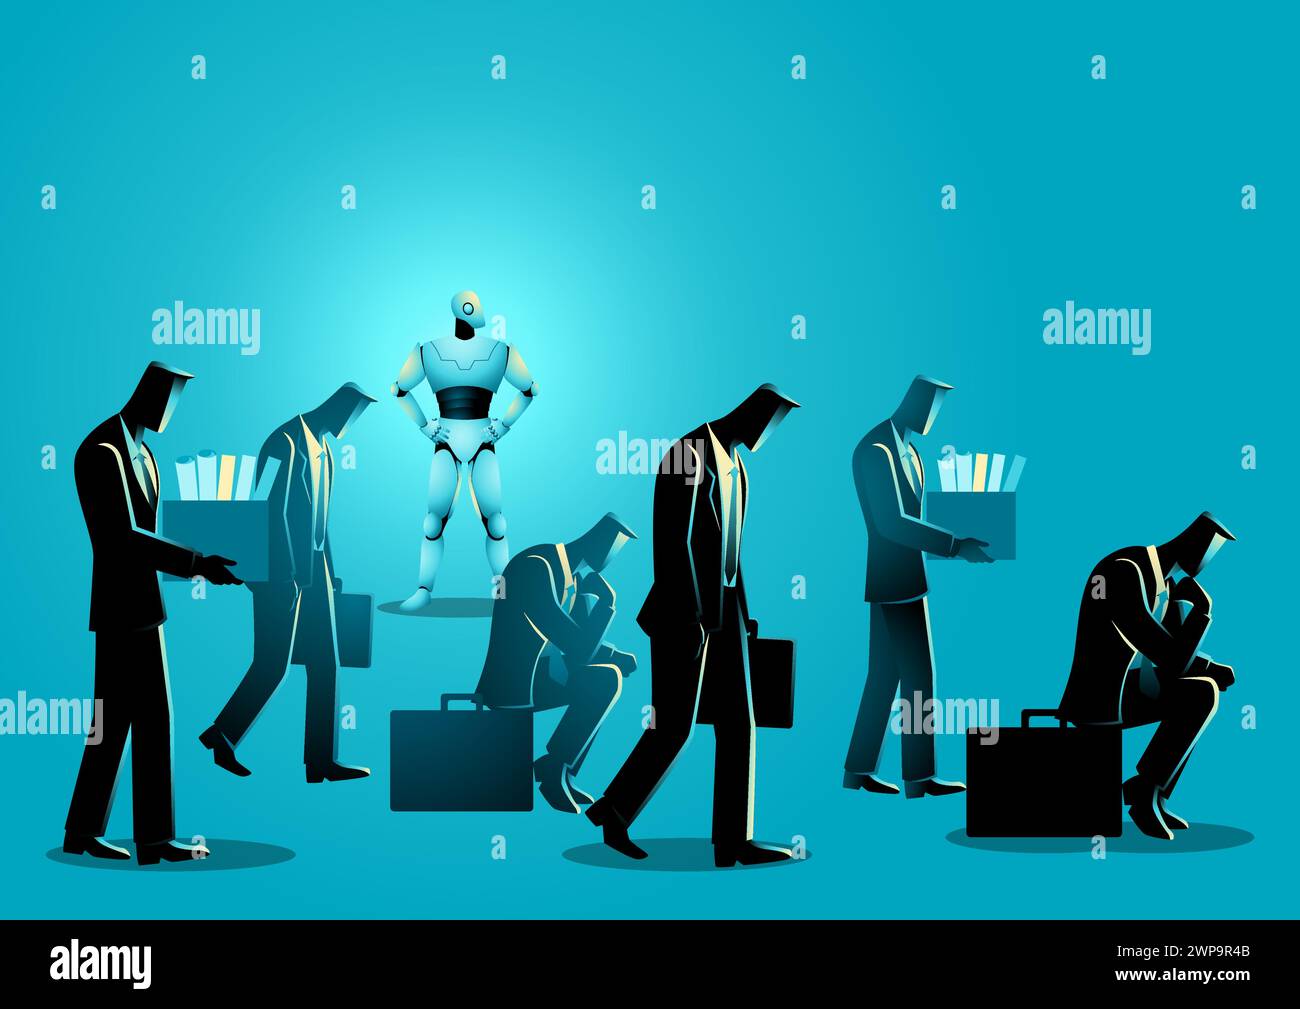 Illustration dépeignant la menace imminente de l'IA, incarnée par un robot dépassant les rôles de travail humains. Représentation de l'évolution de l'automatisation et de ses potenti Illustration de Vecteur